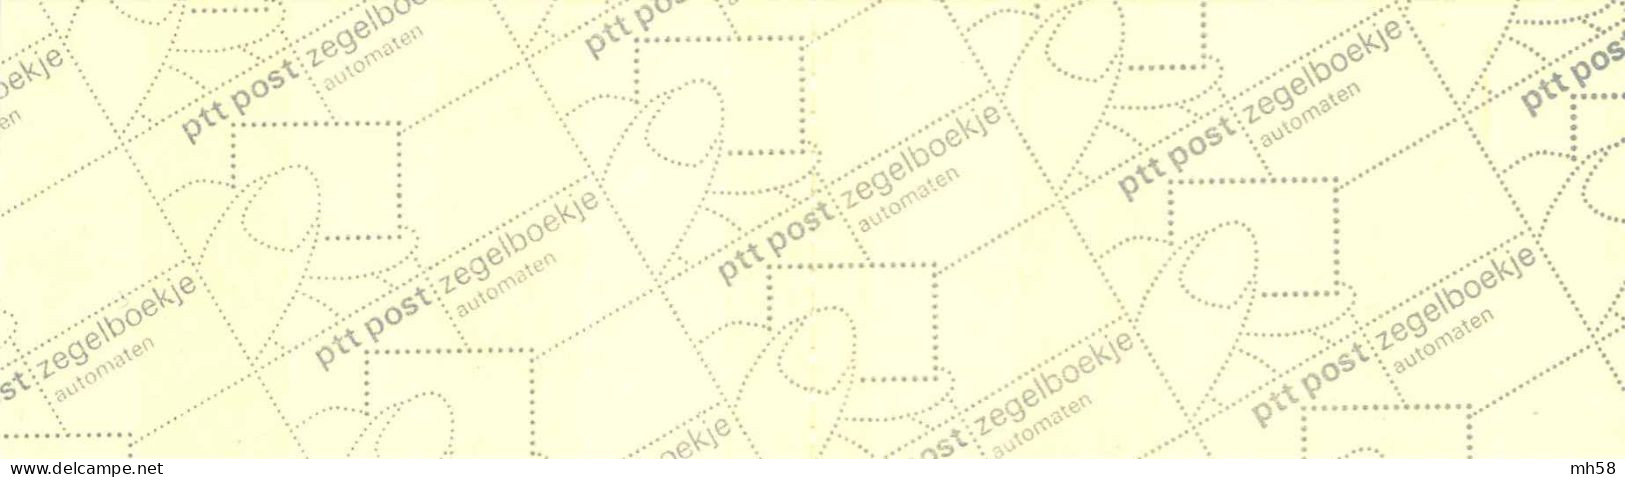 PAYS-BAS NEDERLAND 1982 - Carnet / Booklet / MH Indice PB27B - 3 G Chiffre / Beatrix - YT C 1168b / MI MH 28 - Carnets Et Roulettes